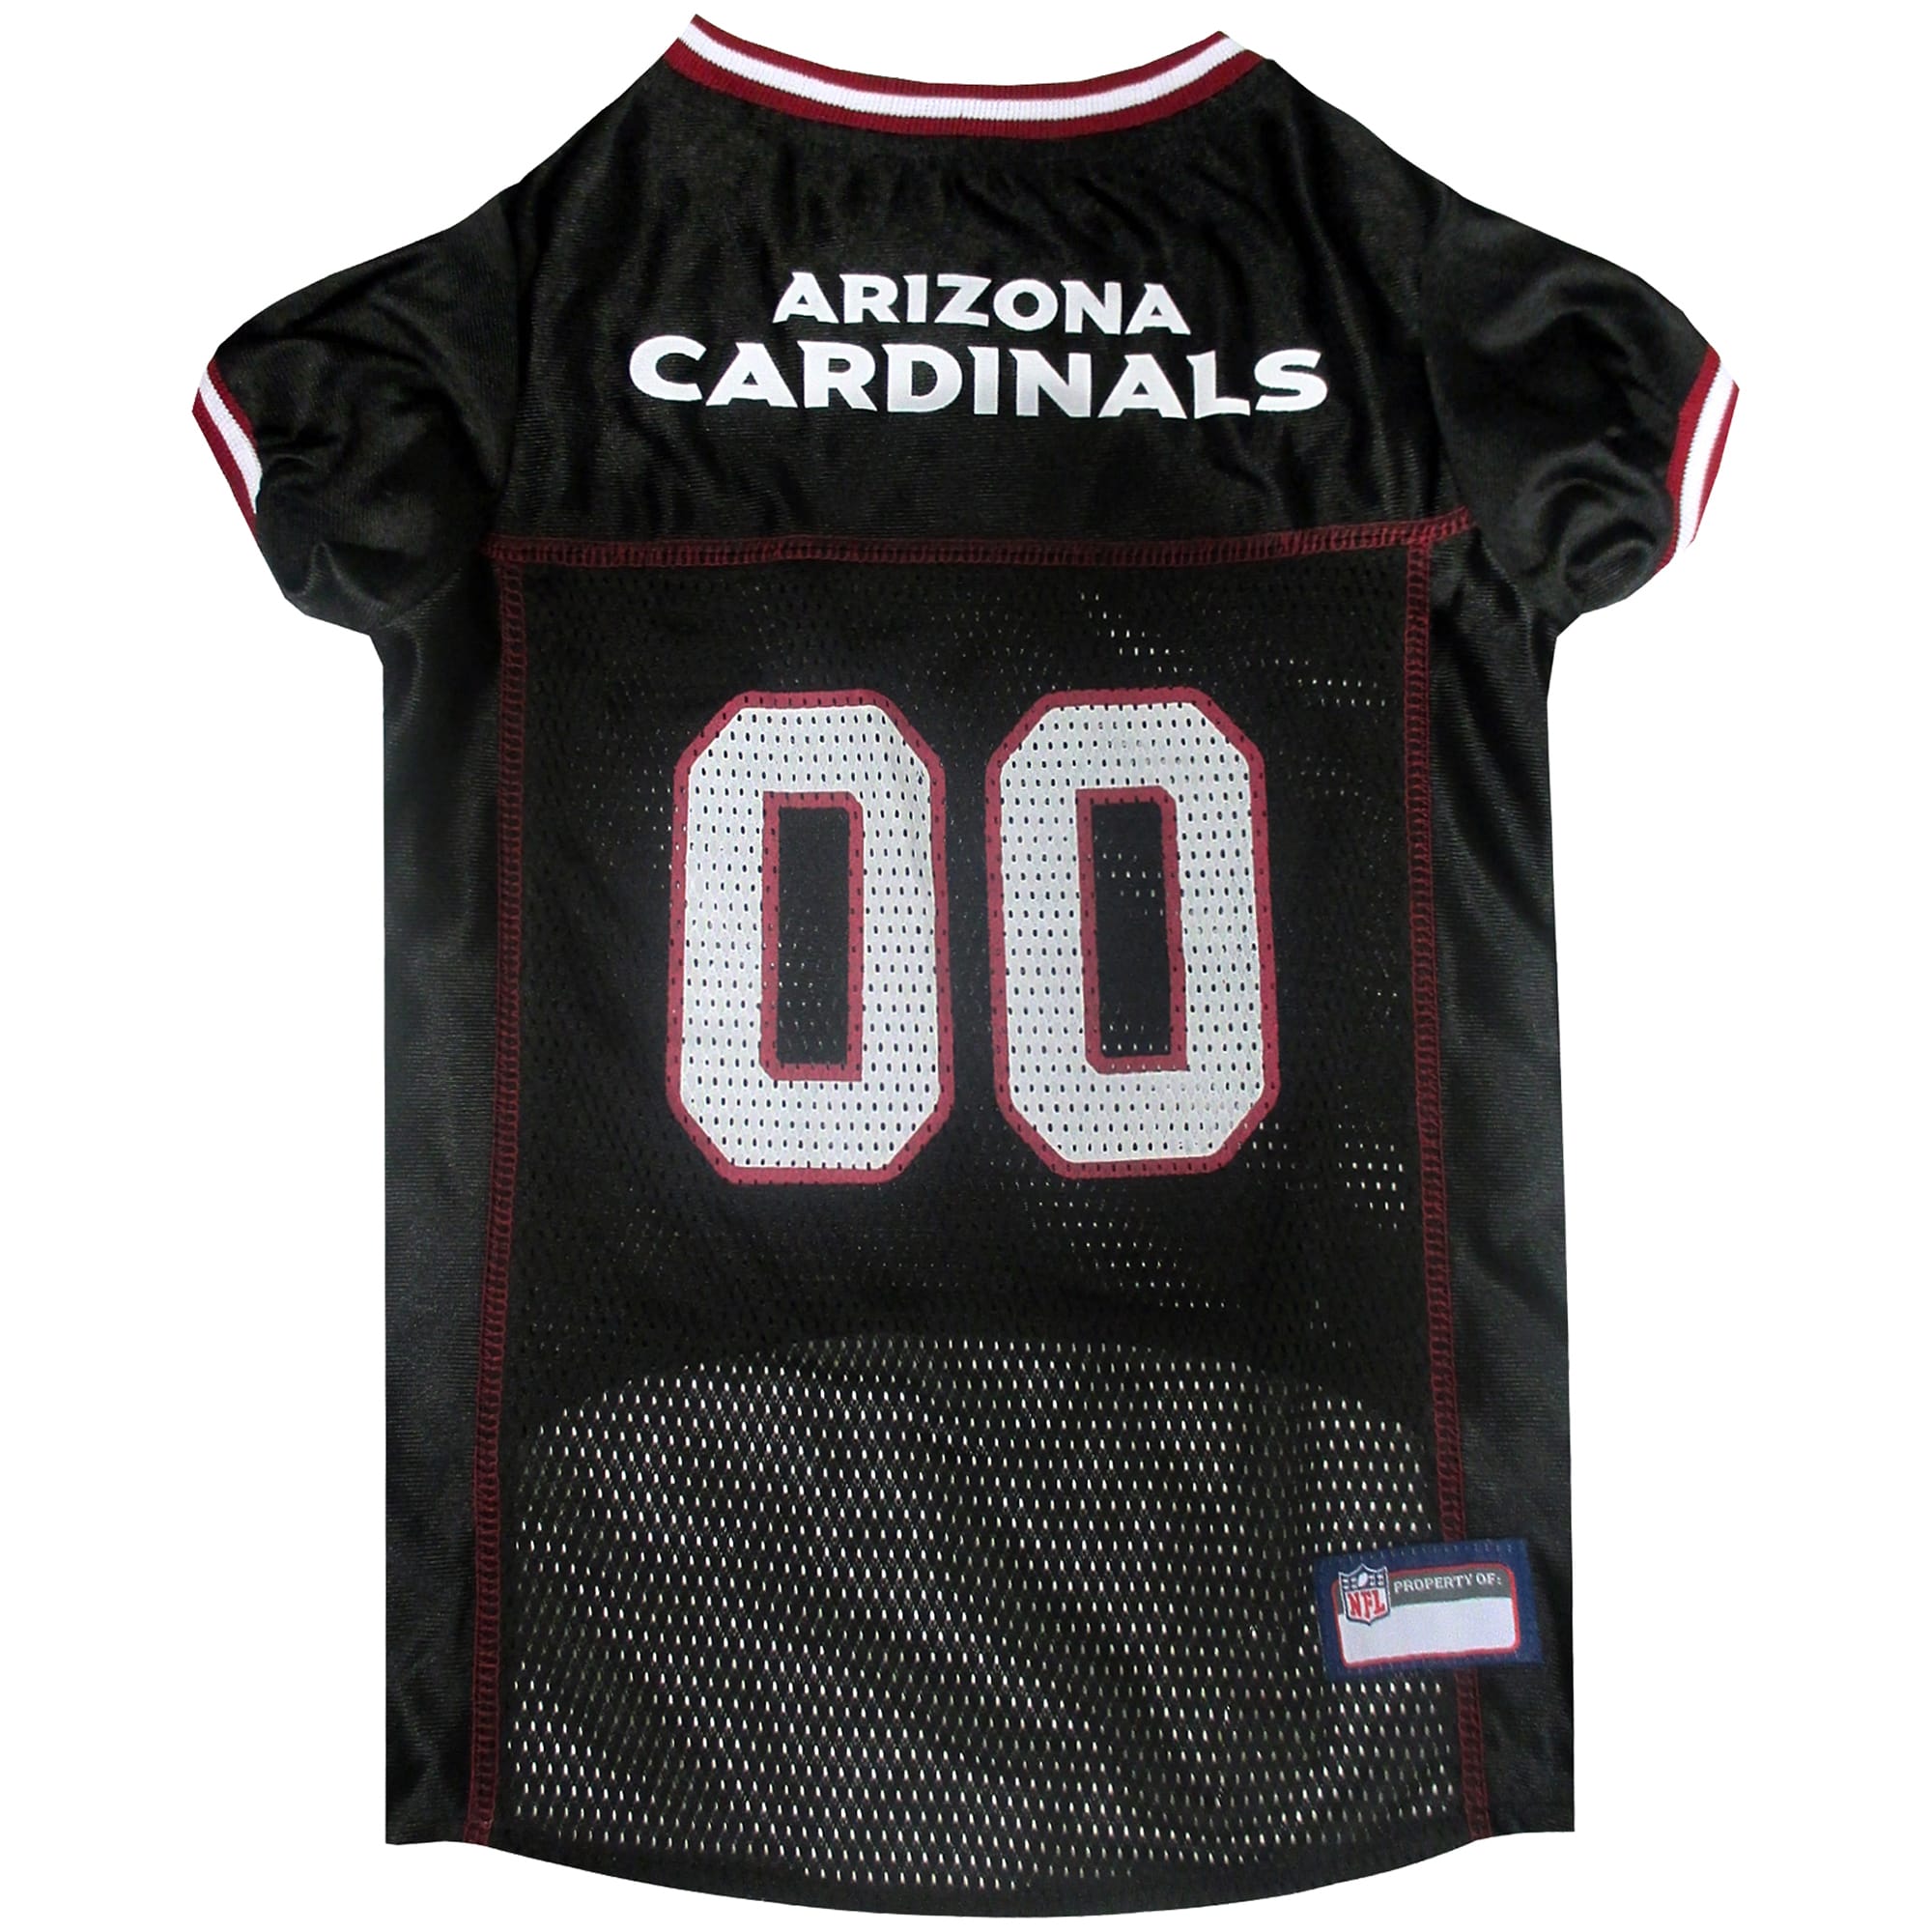 arizona cardinals black jersey